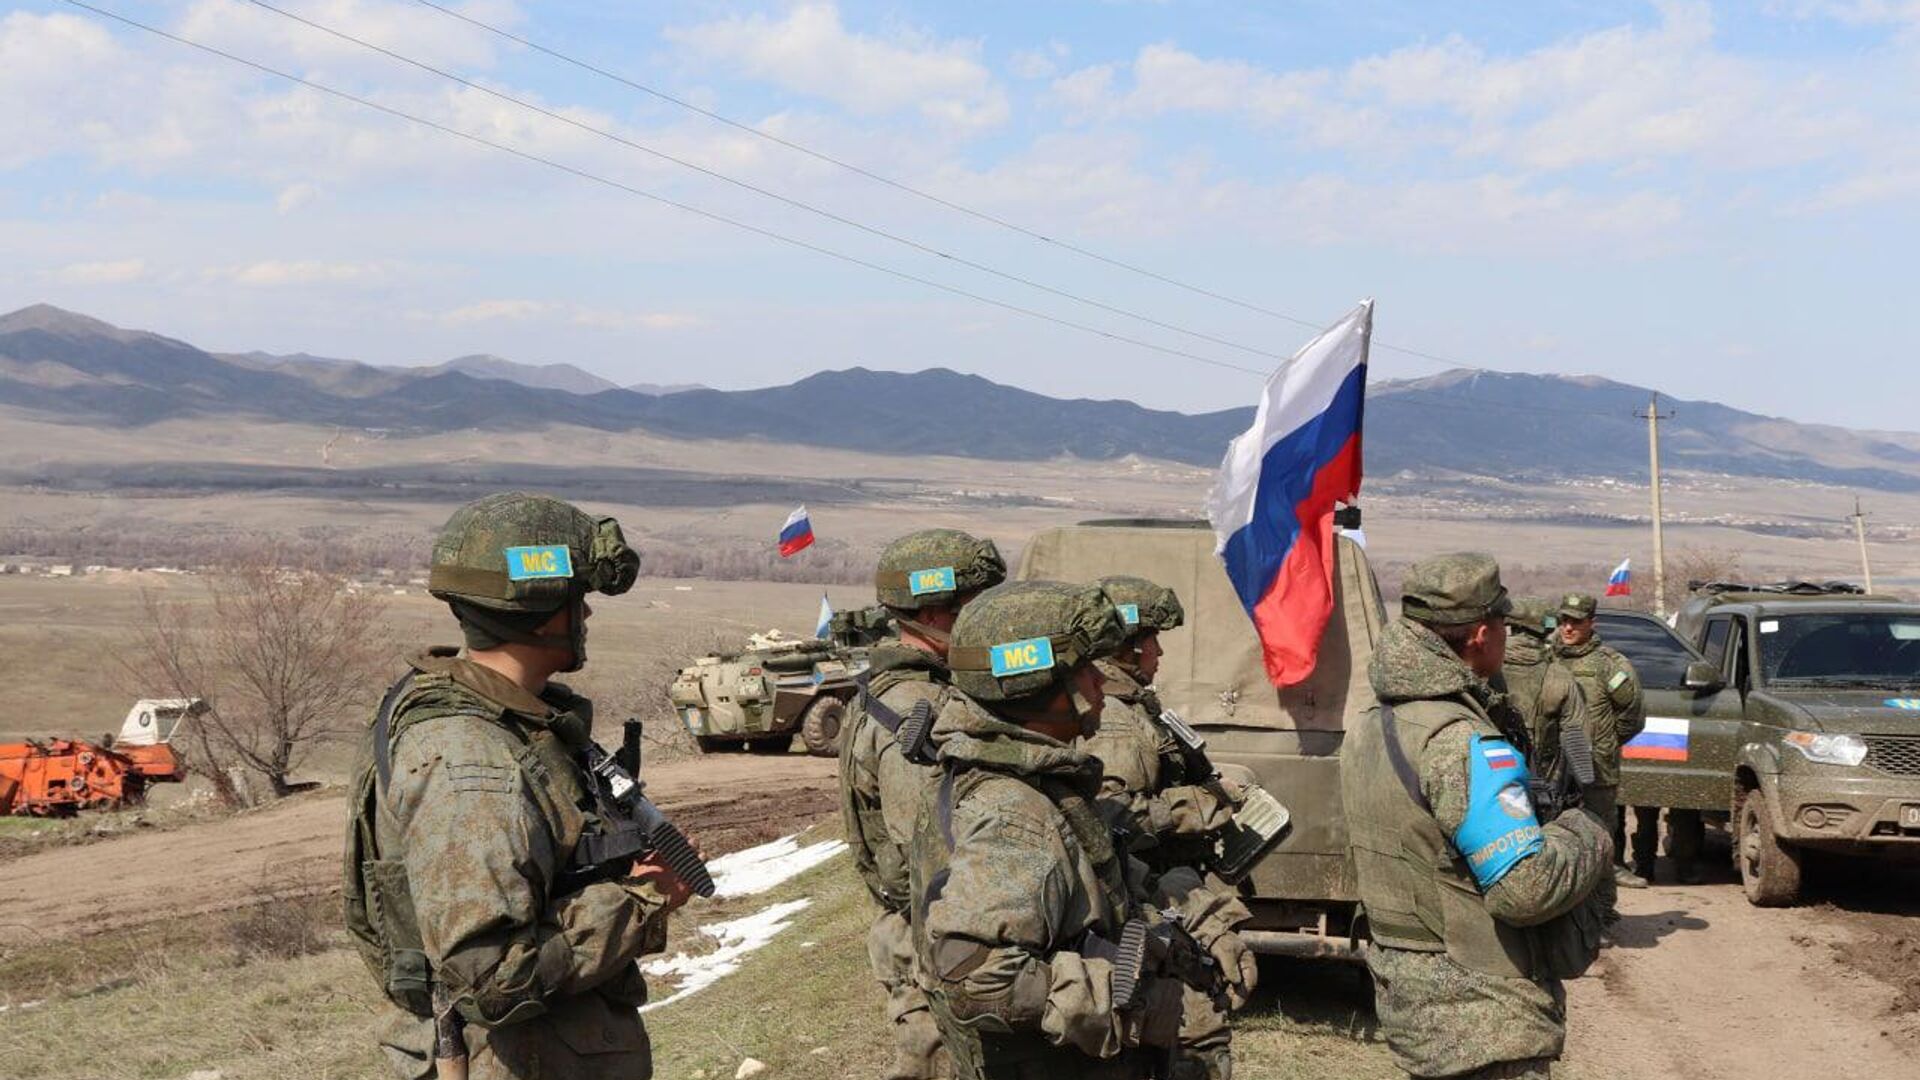 Действия российских миротворцев должны быть расследованы: Пашинян о ситуации в Парухе